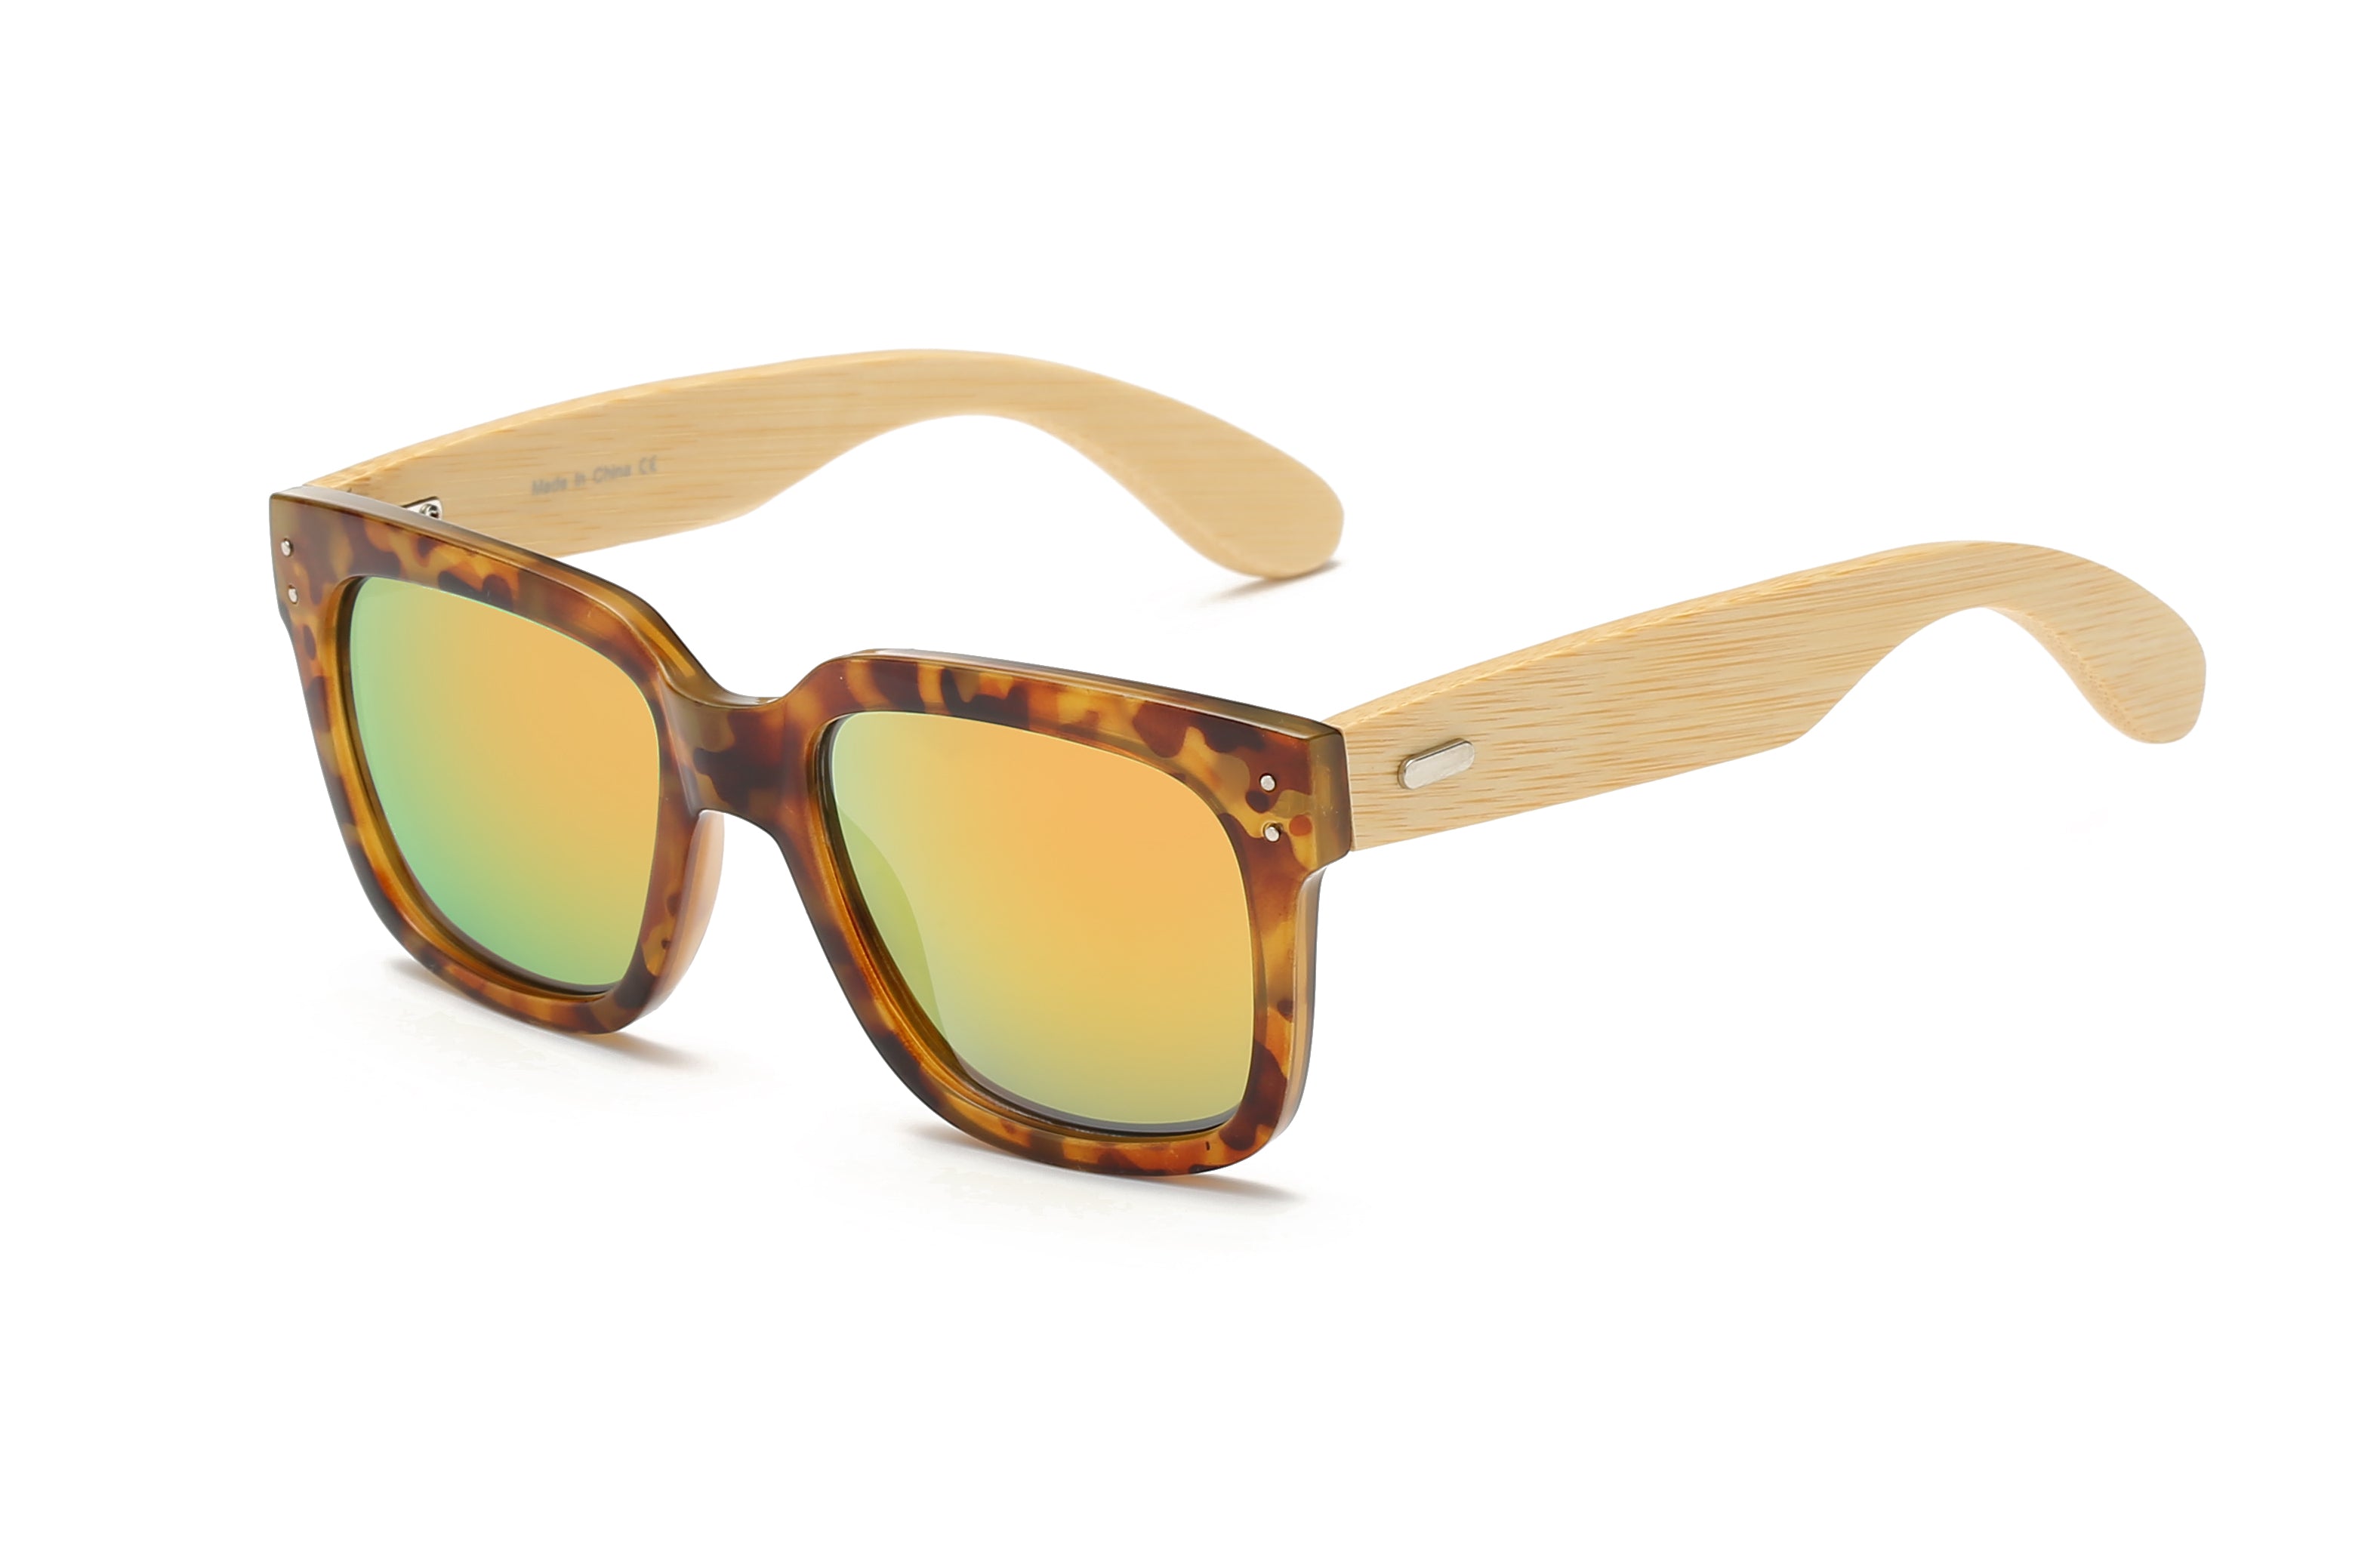 S3005 - Retro Square Fashion Sunglasses Tortoise